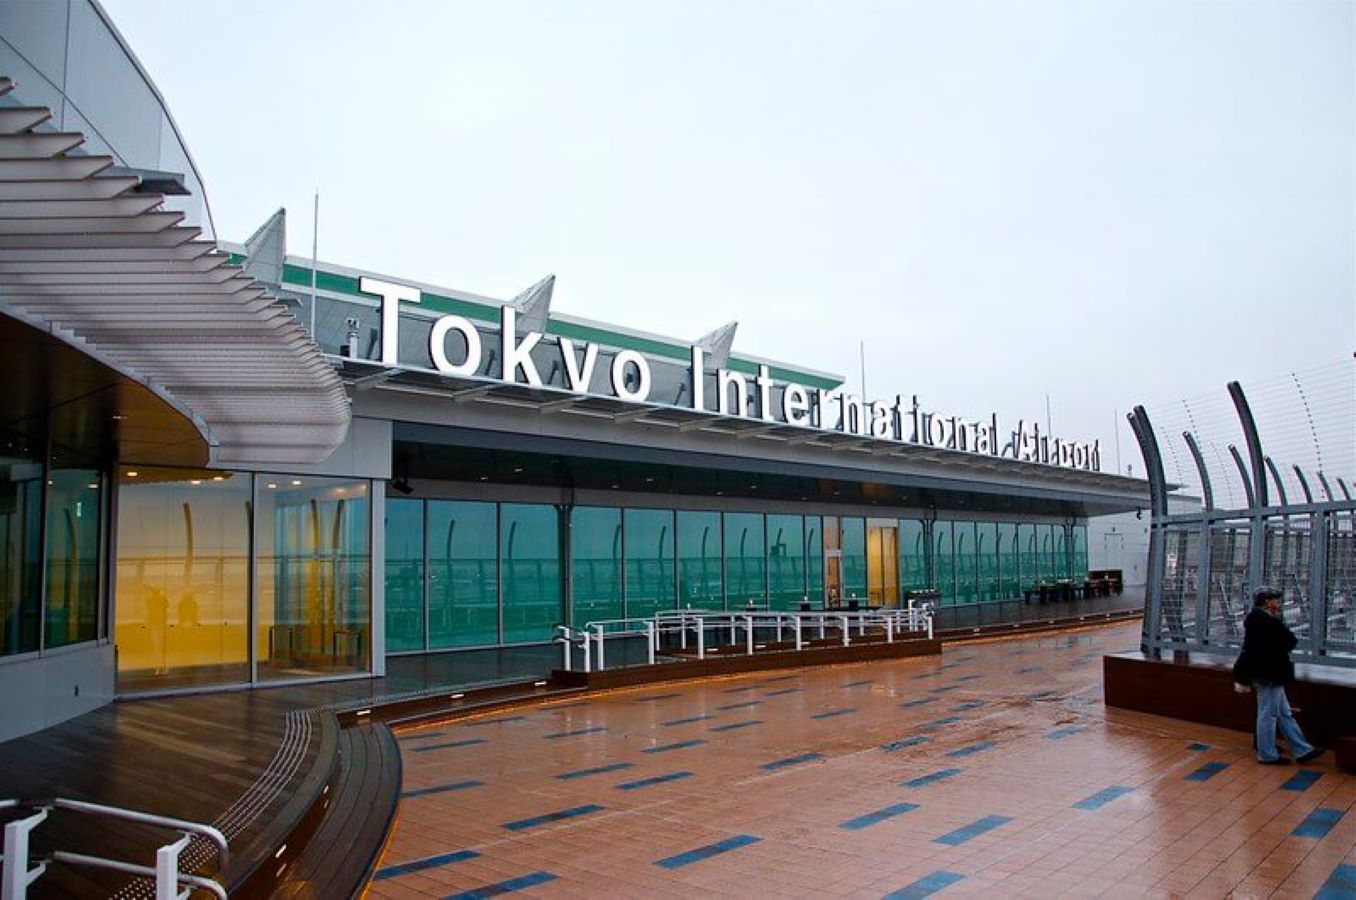 اليابان تعلن عودة العمل بنظام السفر بدون تأشيرة Image